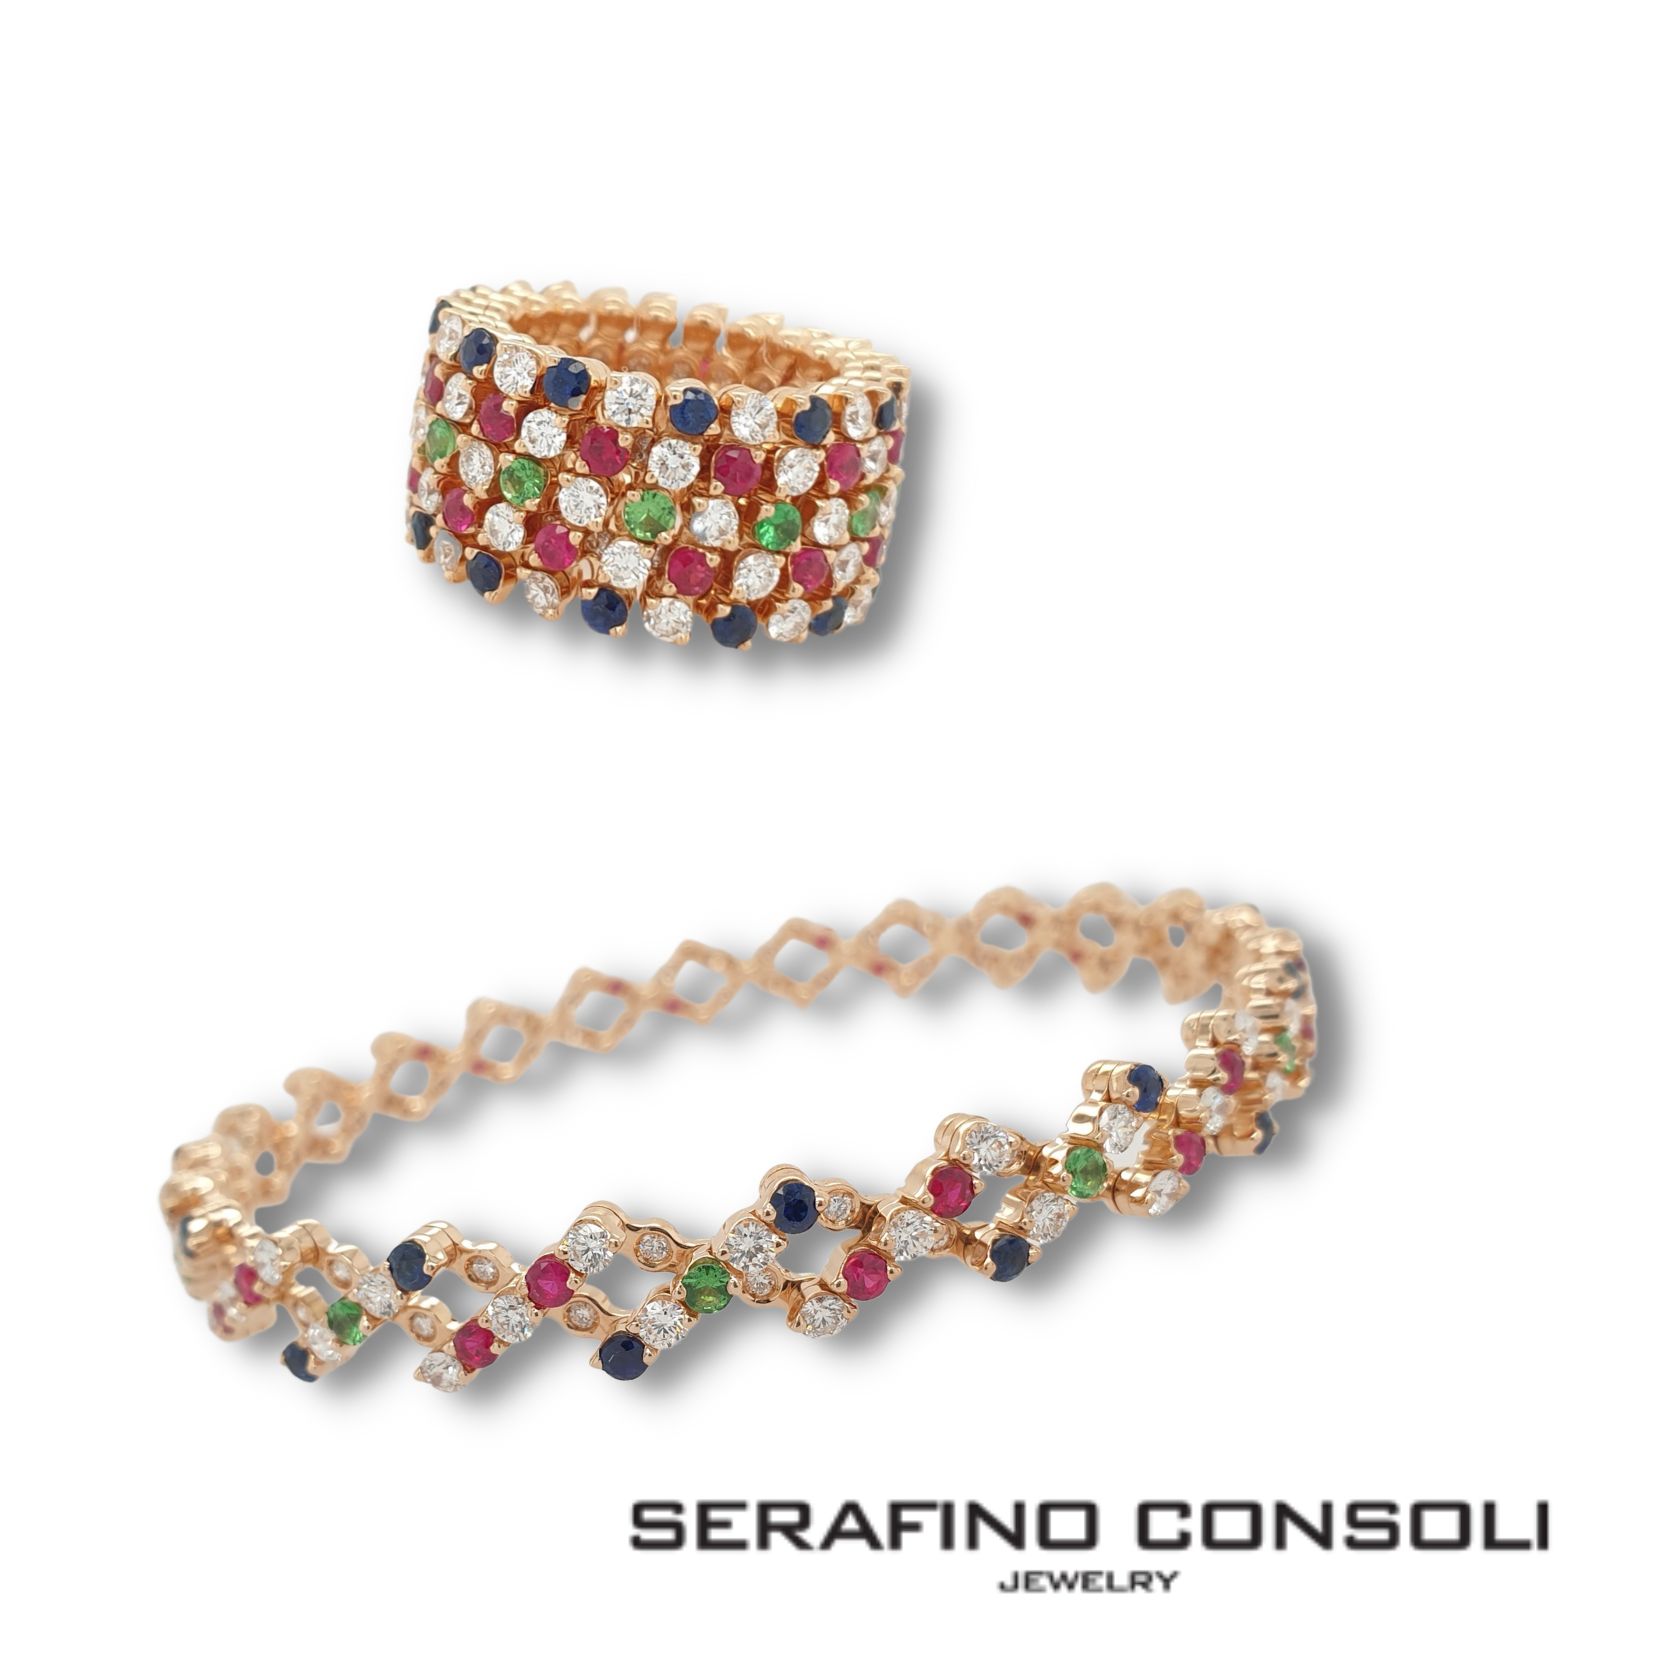 Snikken Zegenen roman Serafino Consoli Brevetto, van ring tot armband. Occasion. #26068 |  Goudsmederij/Juwelier Arnold van Dodewaard